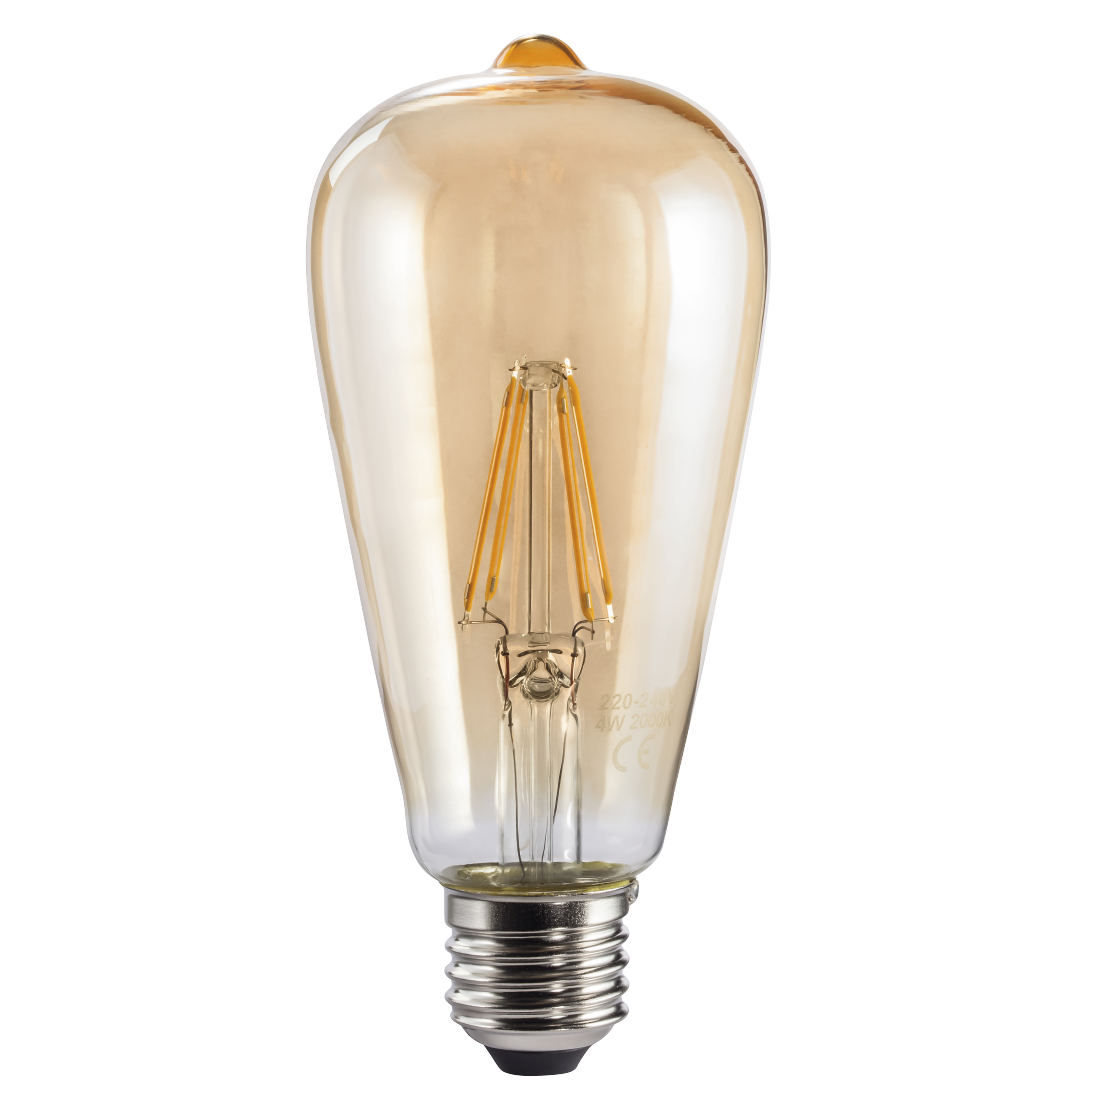 abx High-Res Image - Xavax, Ampoule filament à LED, E27, 400lm rempl. amp. vintage 35W, blc chd